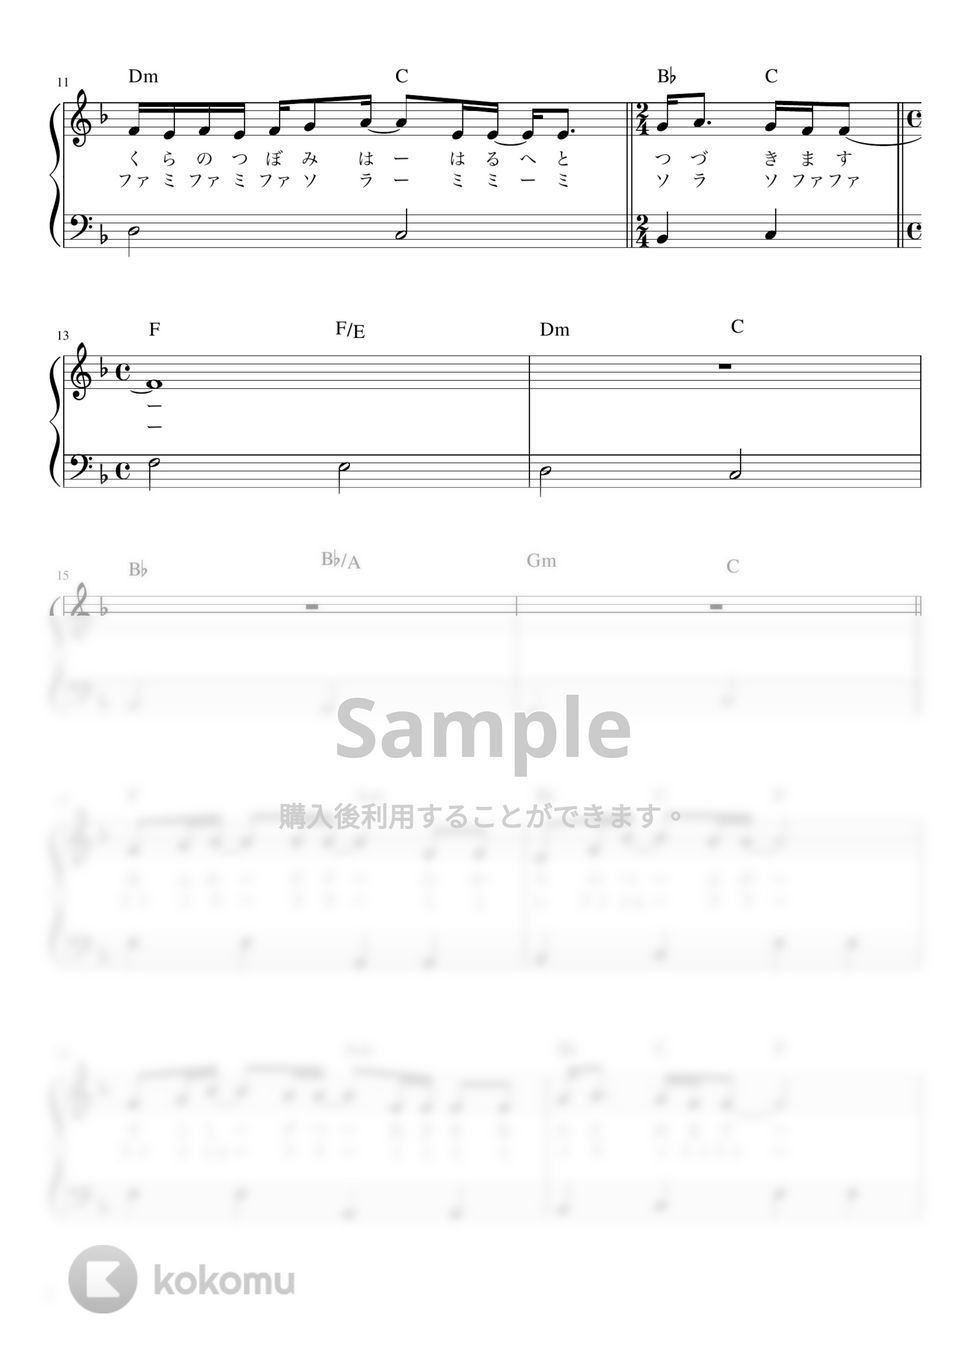 レミオロメン - 3月9日 (かんたん / 歌詞付き / ドレミ付き / 初心者) by piano.tokyo